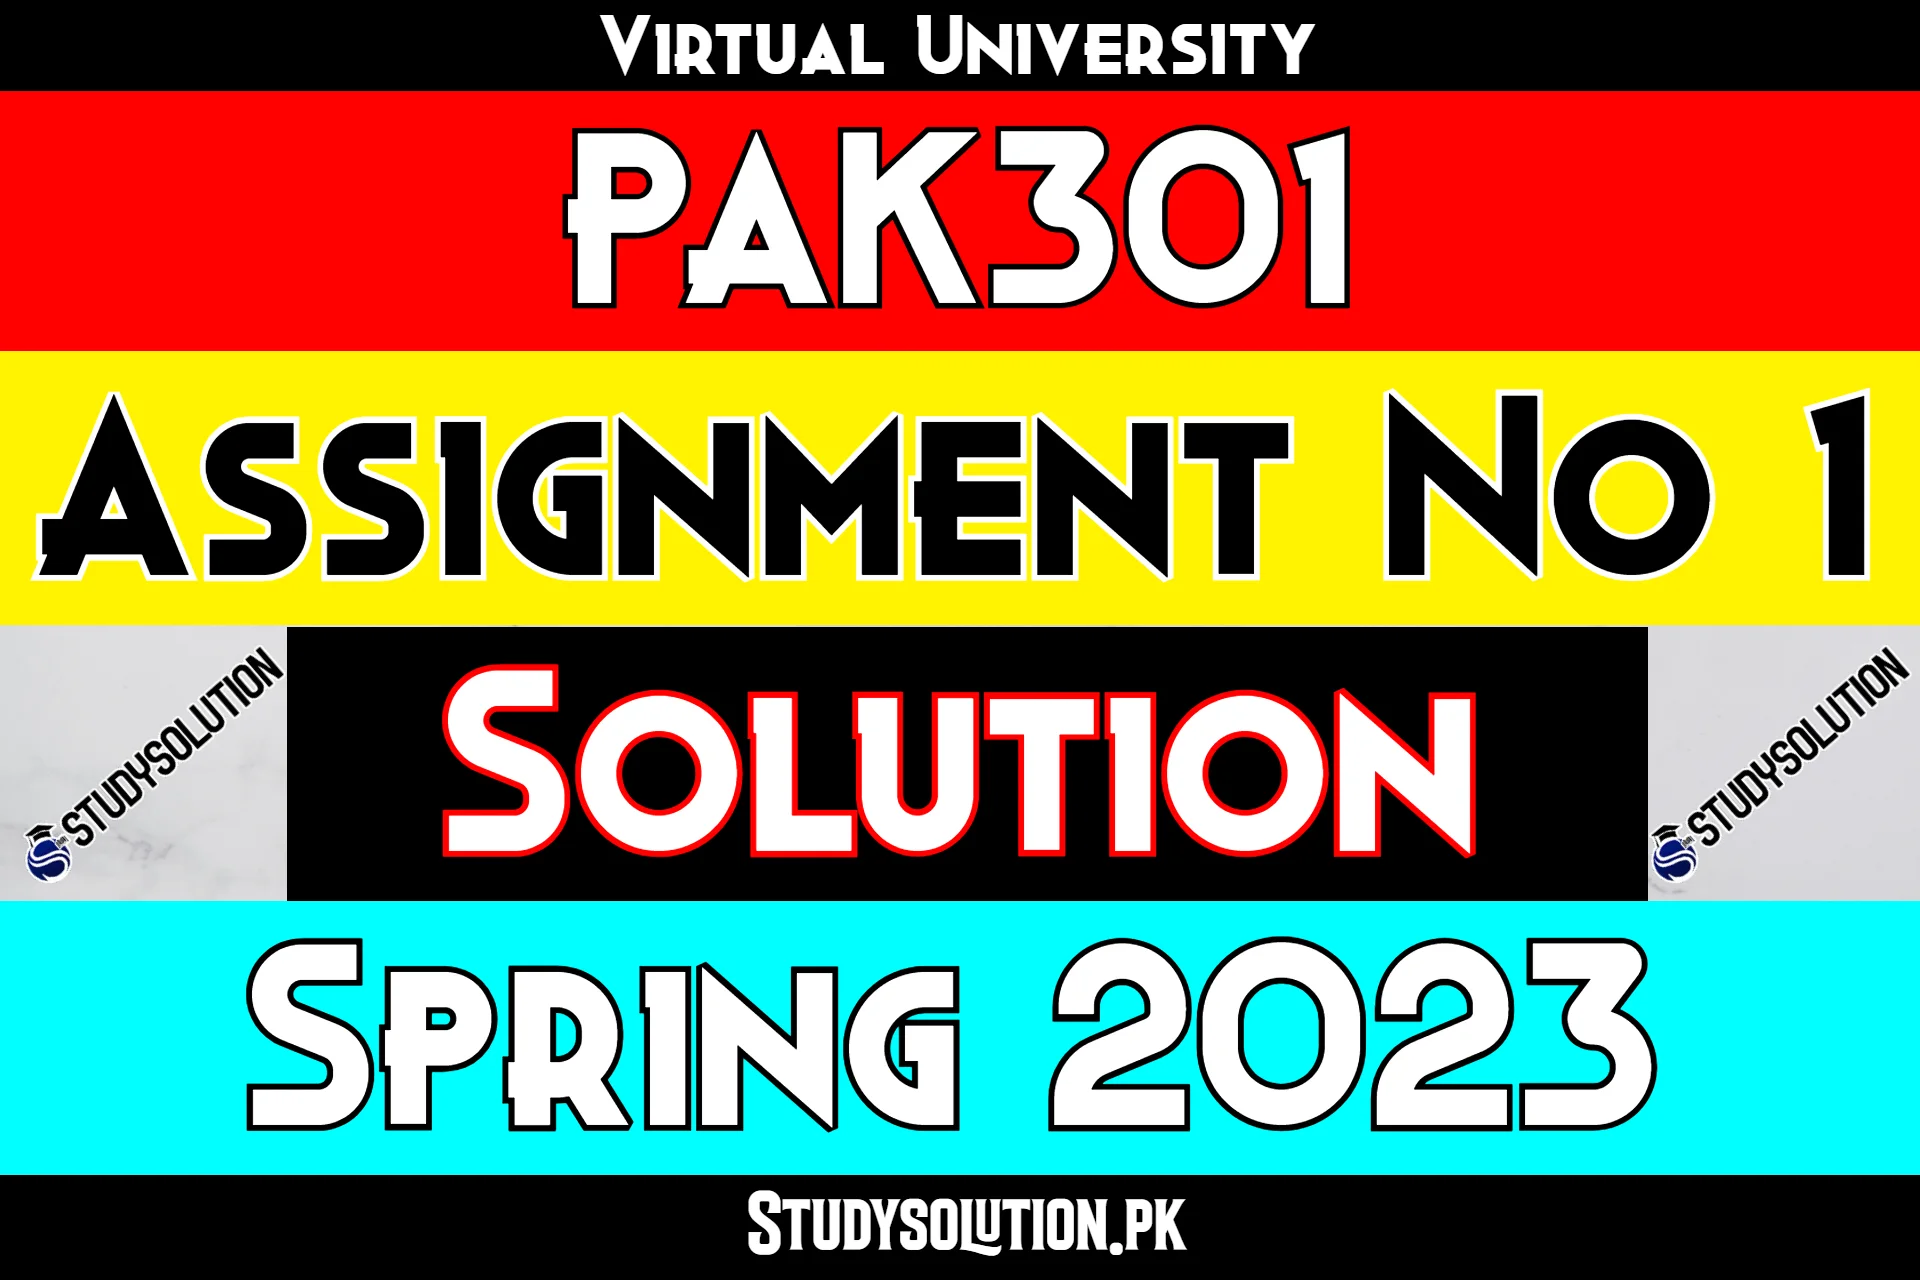 PAK301 Assignment No 1 Solution Spring 2023